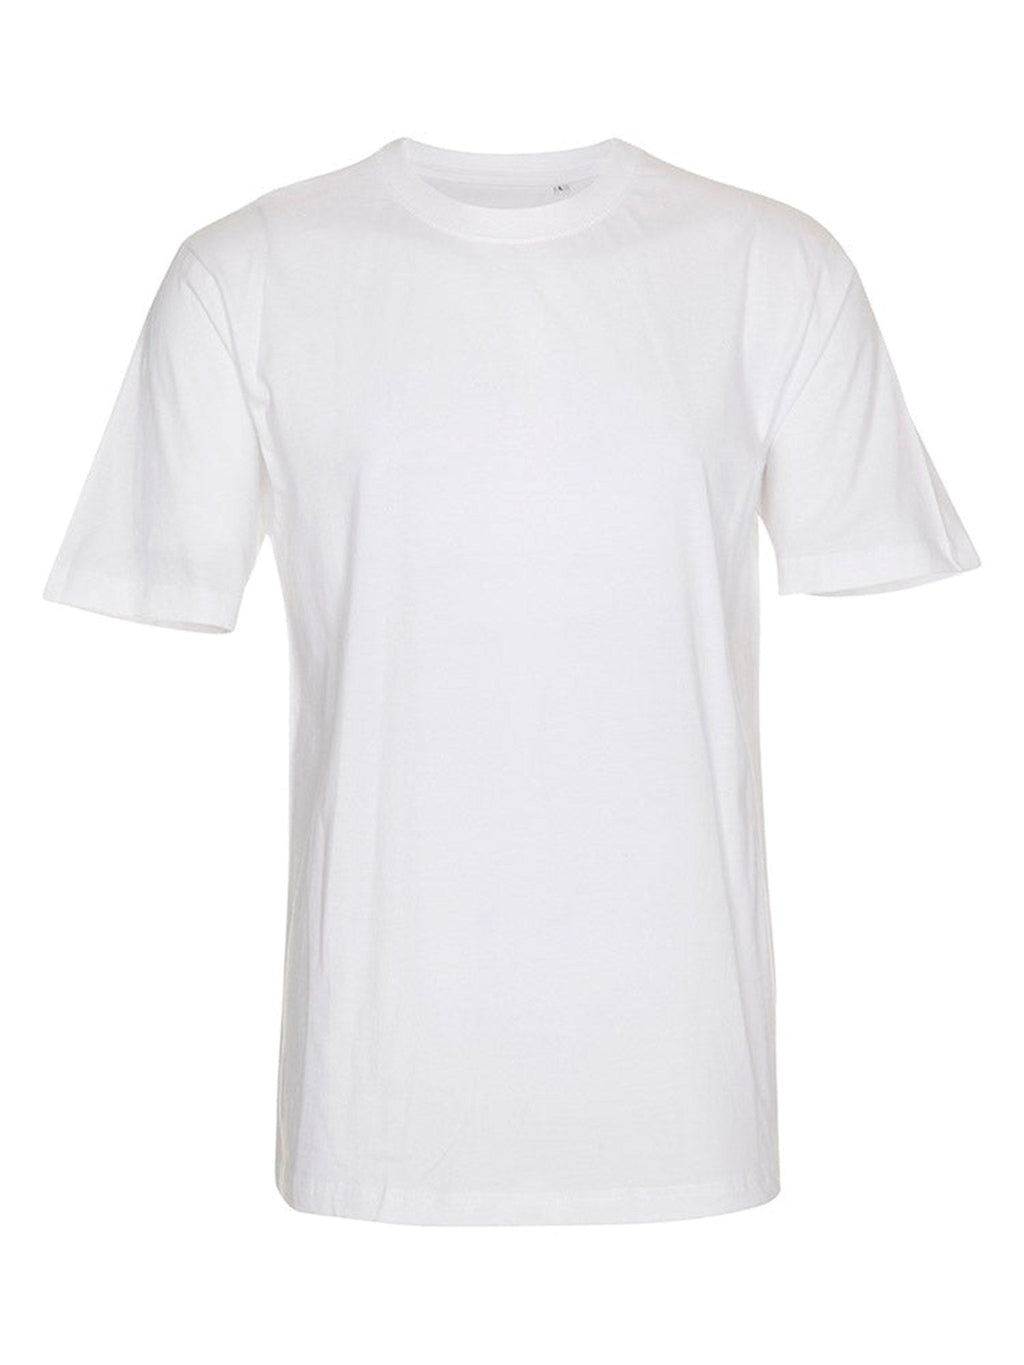 超大T恤 - 白色